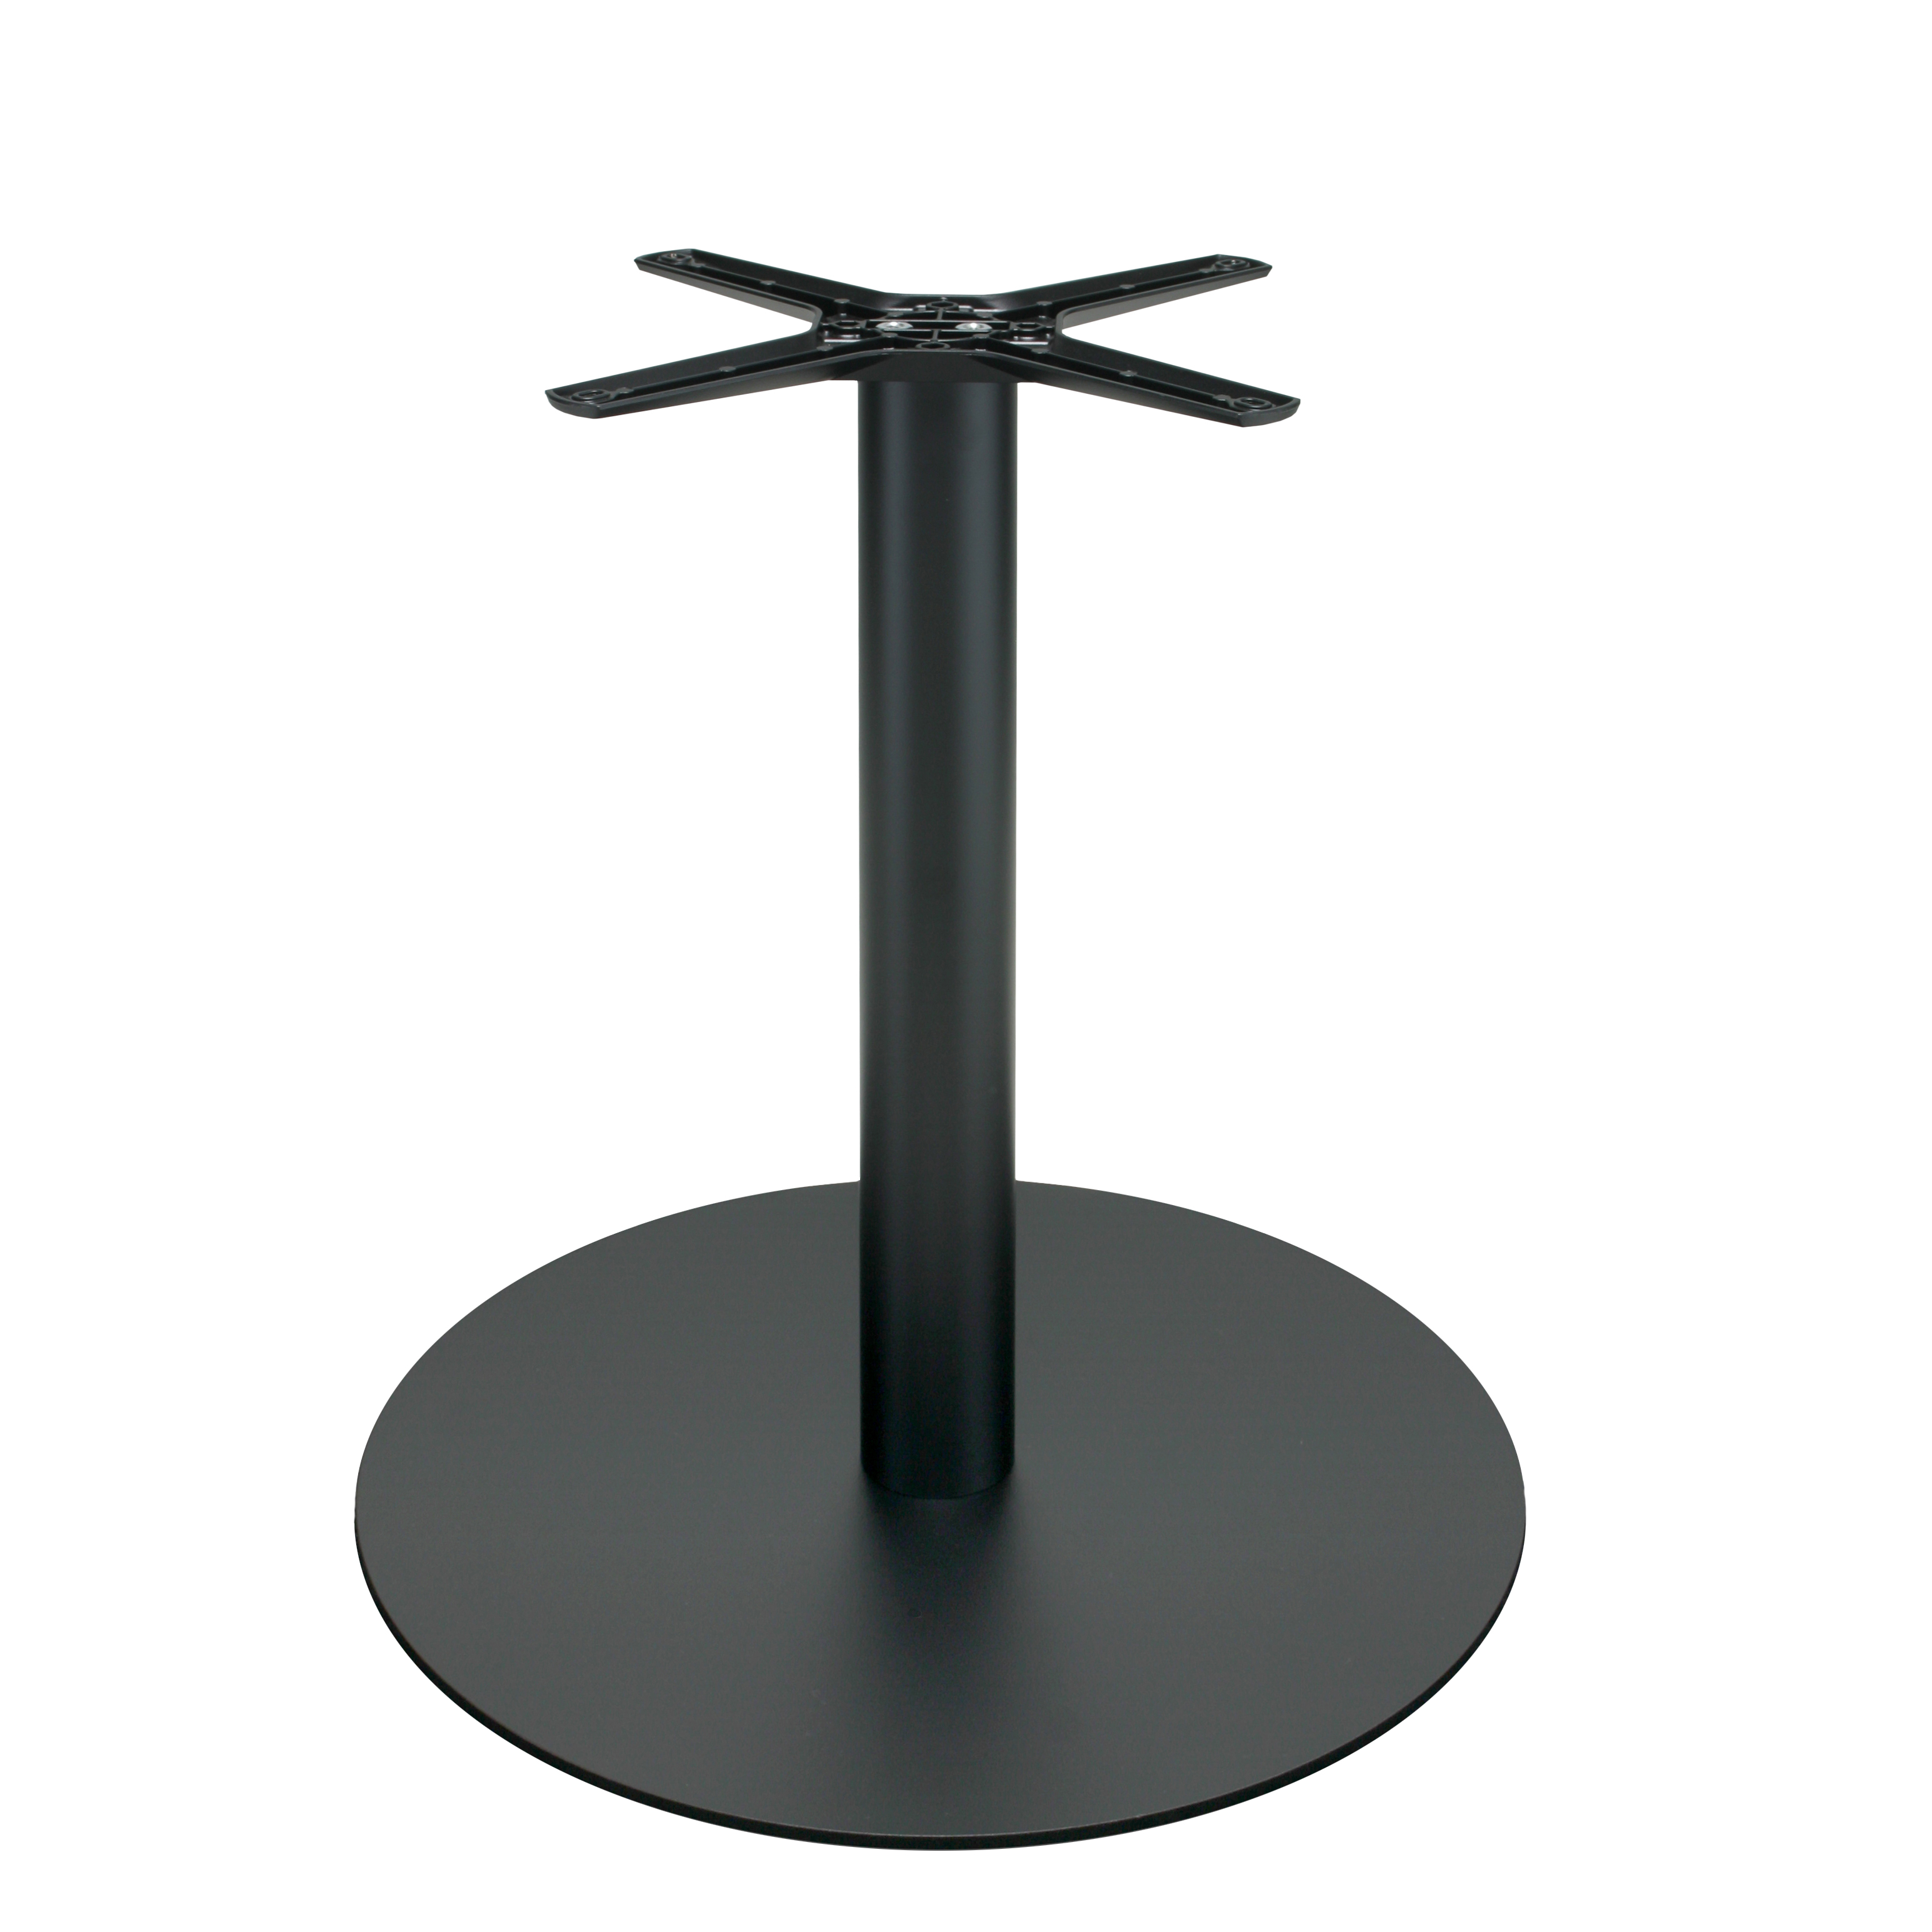 Tischgestell P020F aus Metall, pulverbeschichtet schwarz, rund